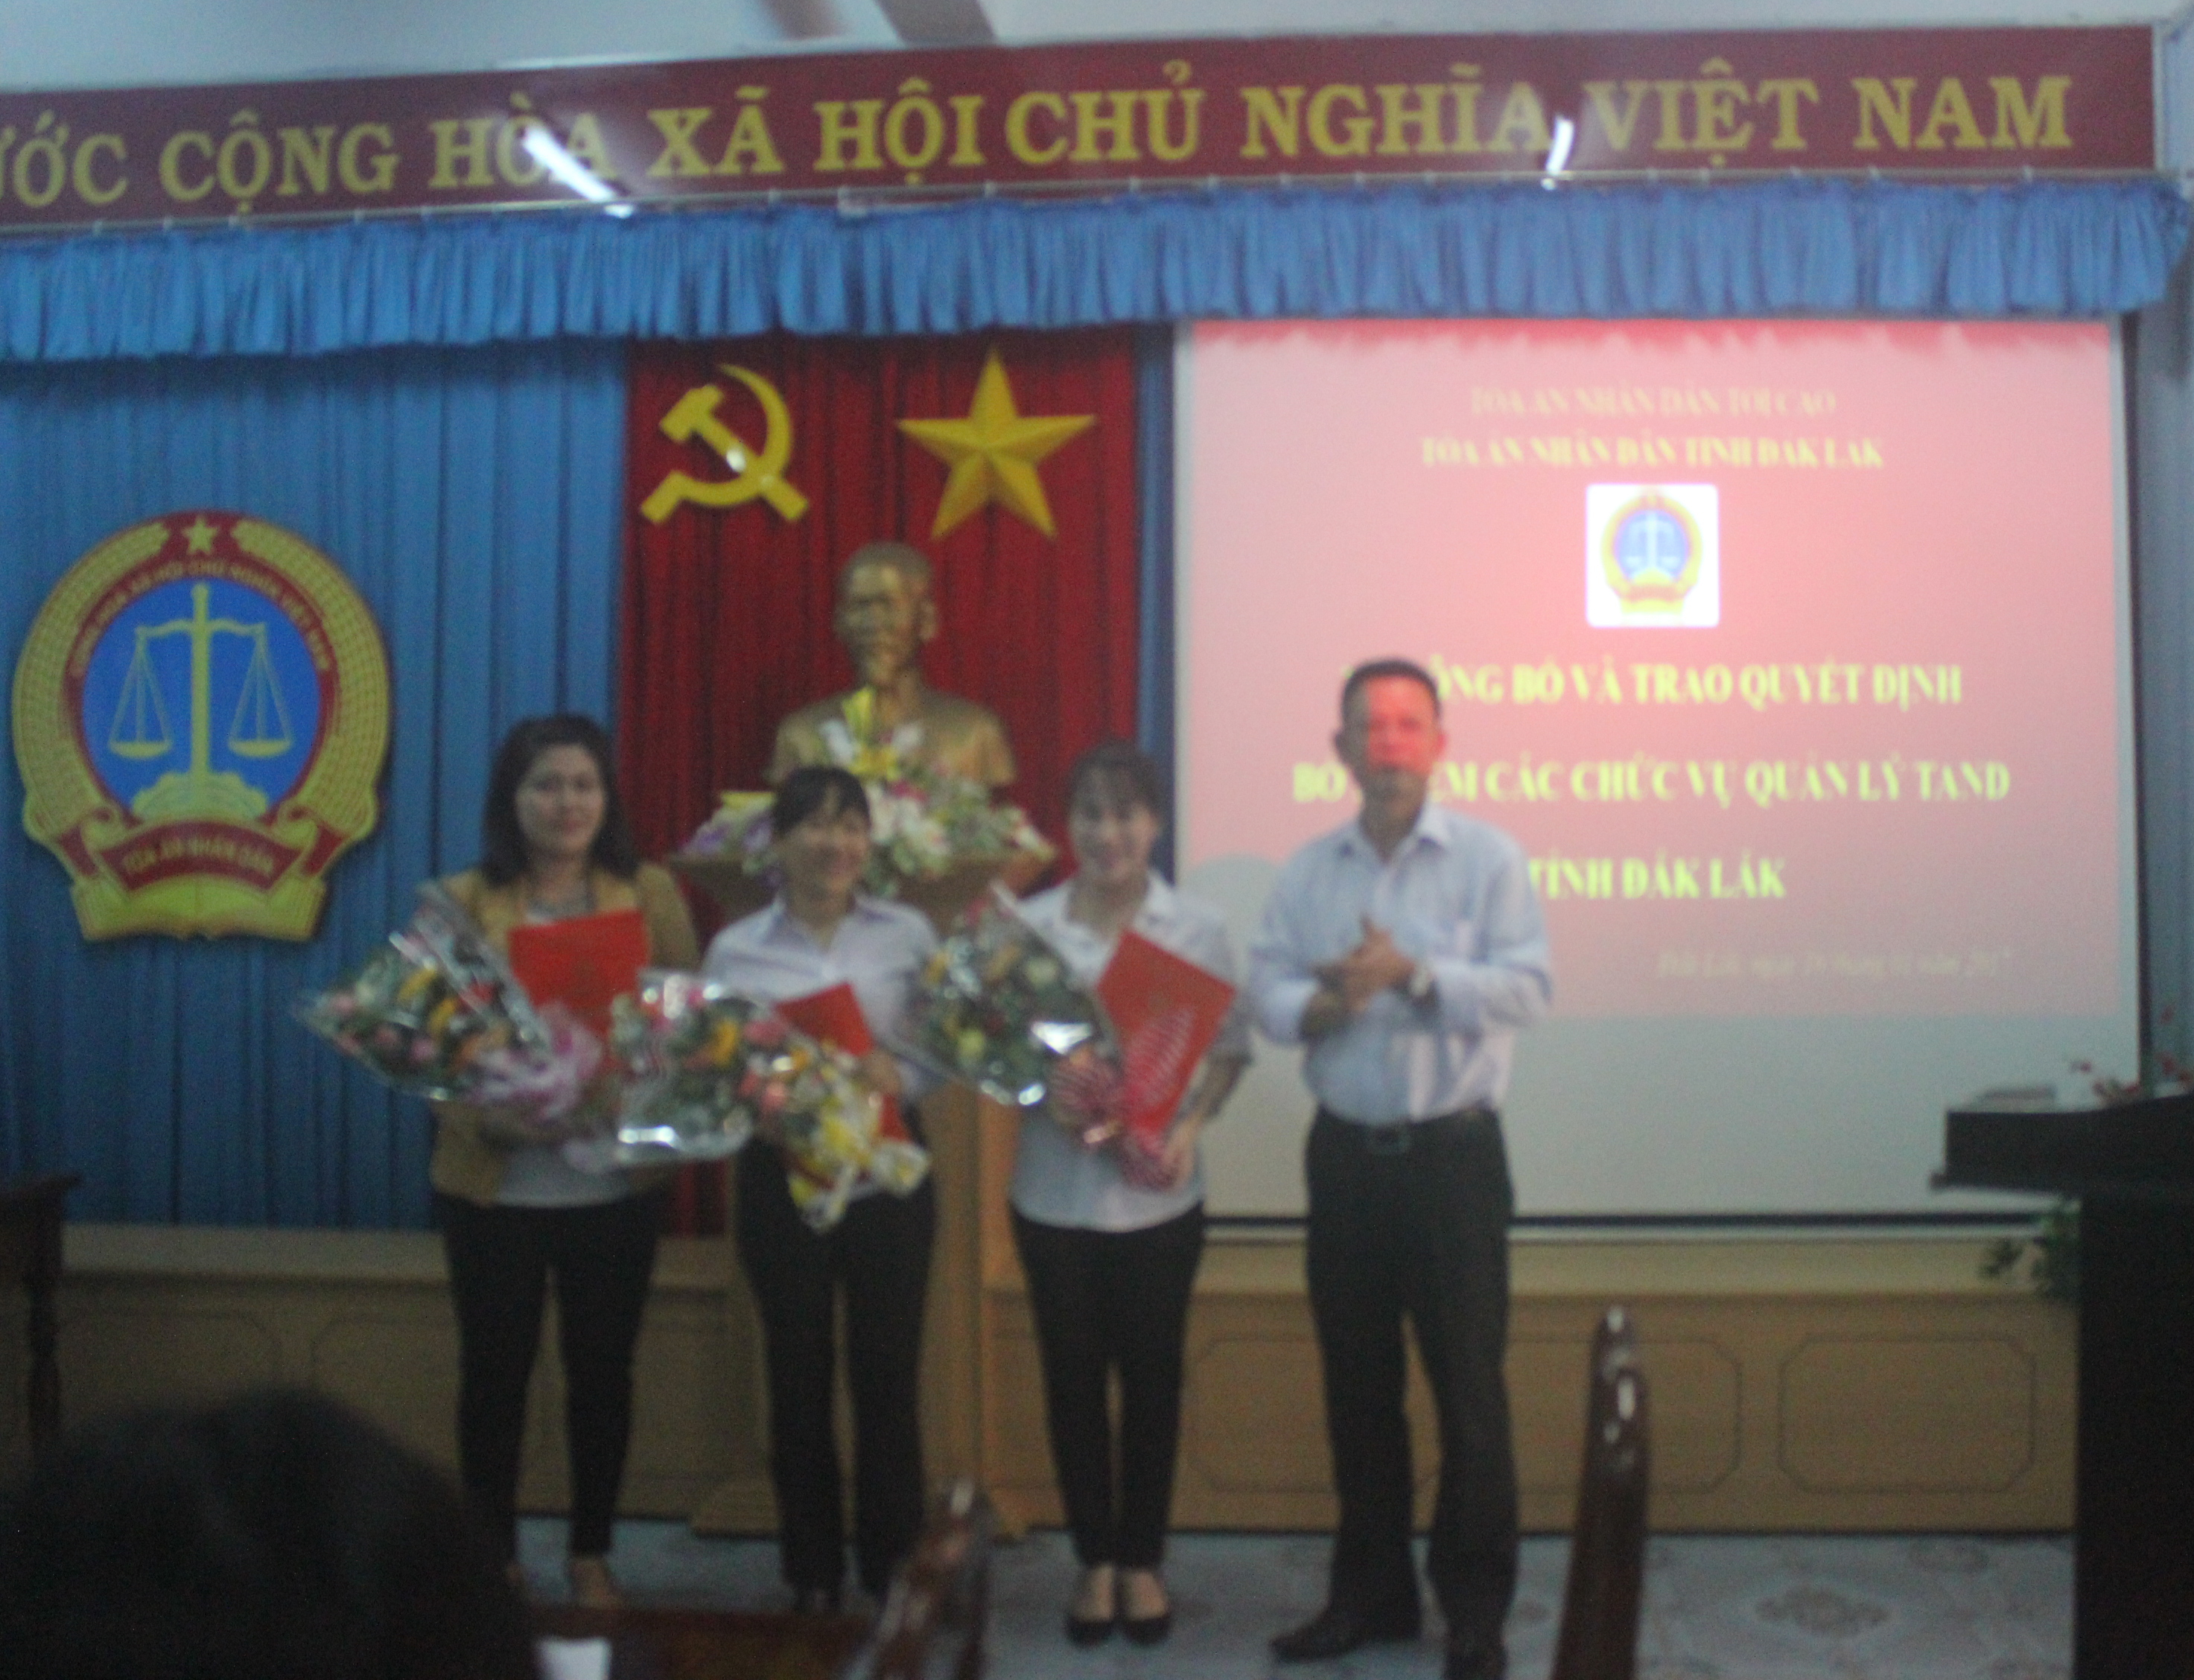 Tòa án nhân dân tỉnh Đắk Lắk tổ chức Lễ trao quyết định bổ nhiệm chức vụ quản lý